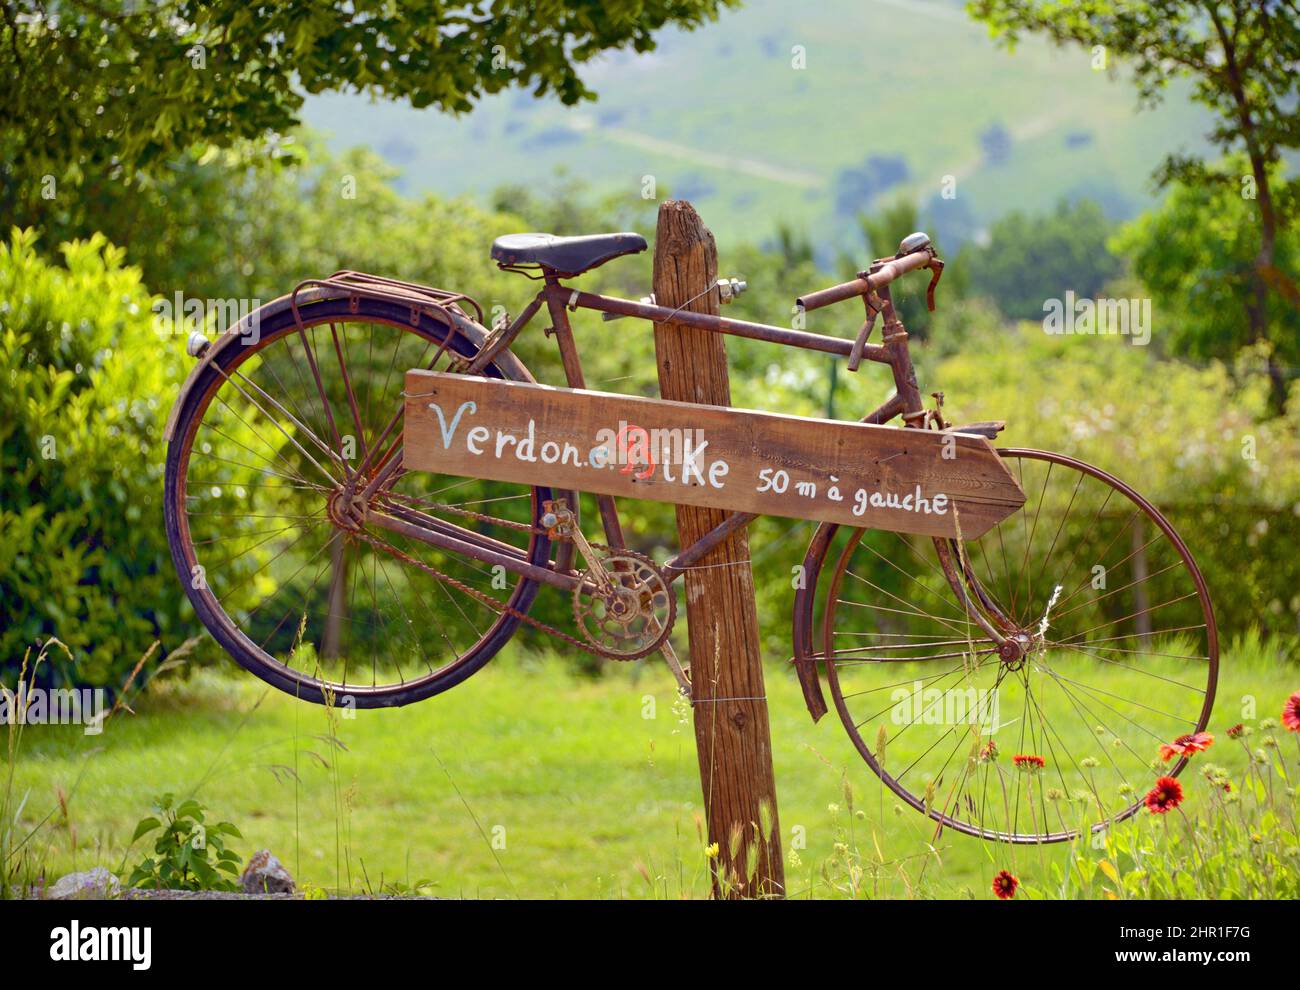 La Palud sur Verdon, location de vélos, France, Alpes de haute Provence Banque D'Images